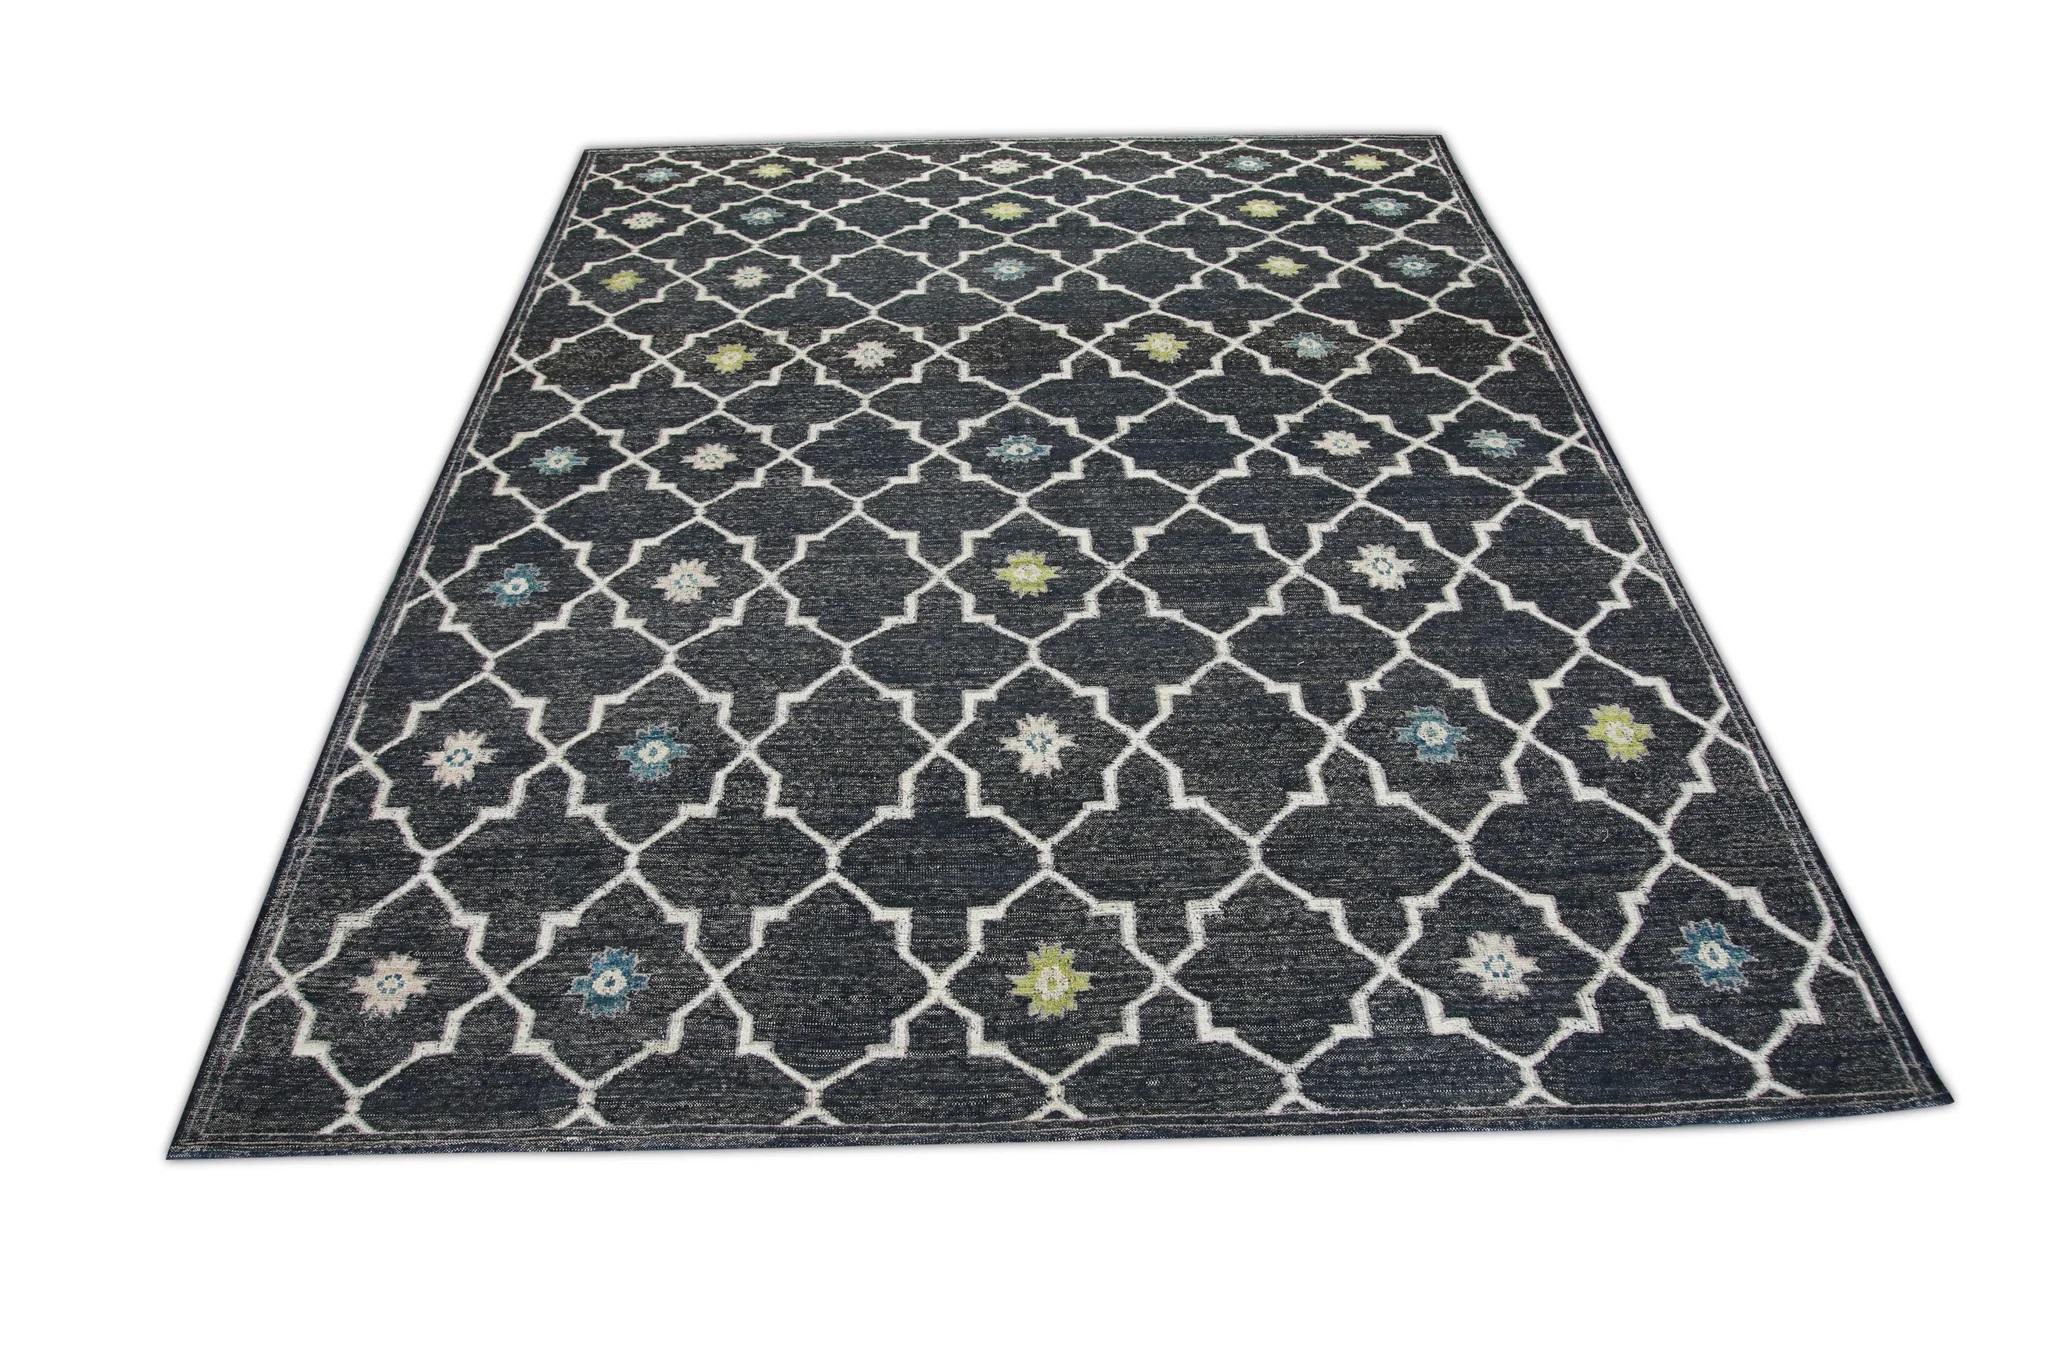 Charcoal Flatweave Handmade Wool Rug in Blue & Green Geometric Design 10' X 12'4 For Sale 2